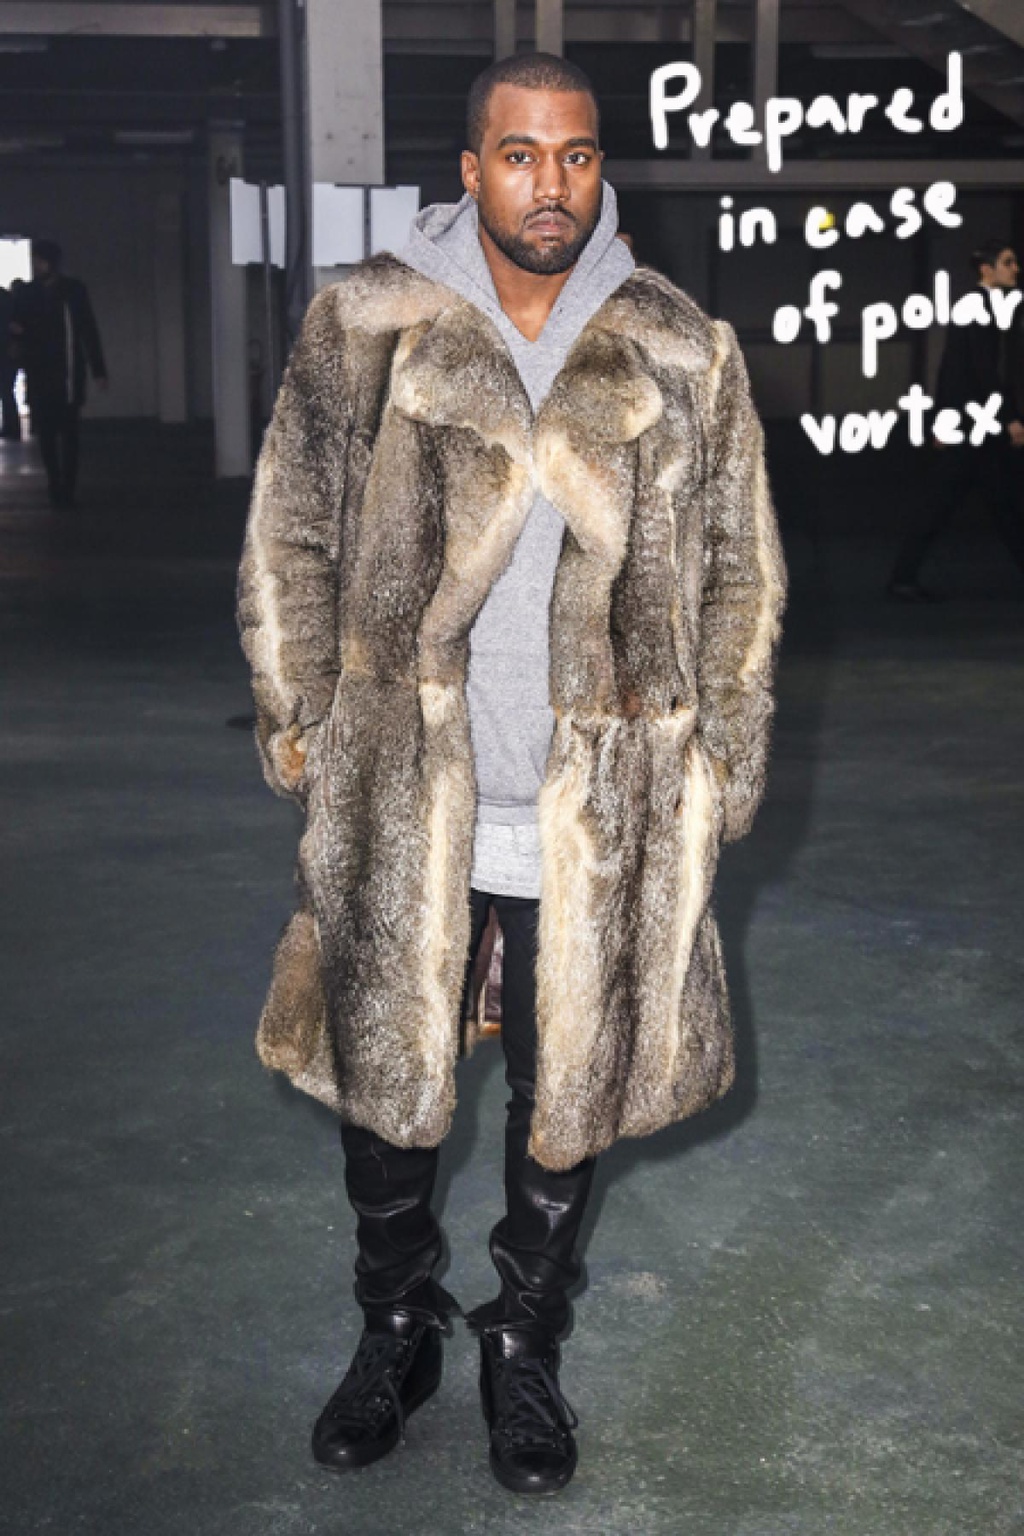 Năm 2017, Kanye West cho ra mắt bộ sưu tập Yeezy Season 5 với sự xuất hiện của các thiết kế làm từ lông động vật